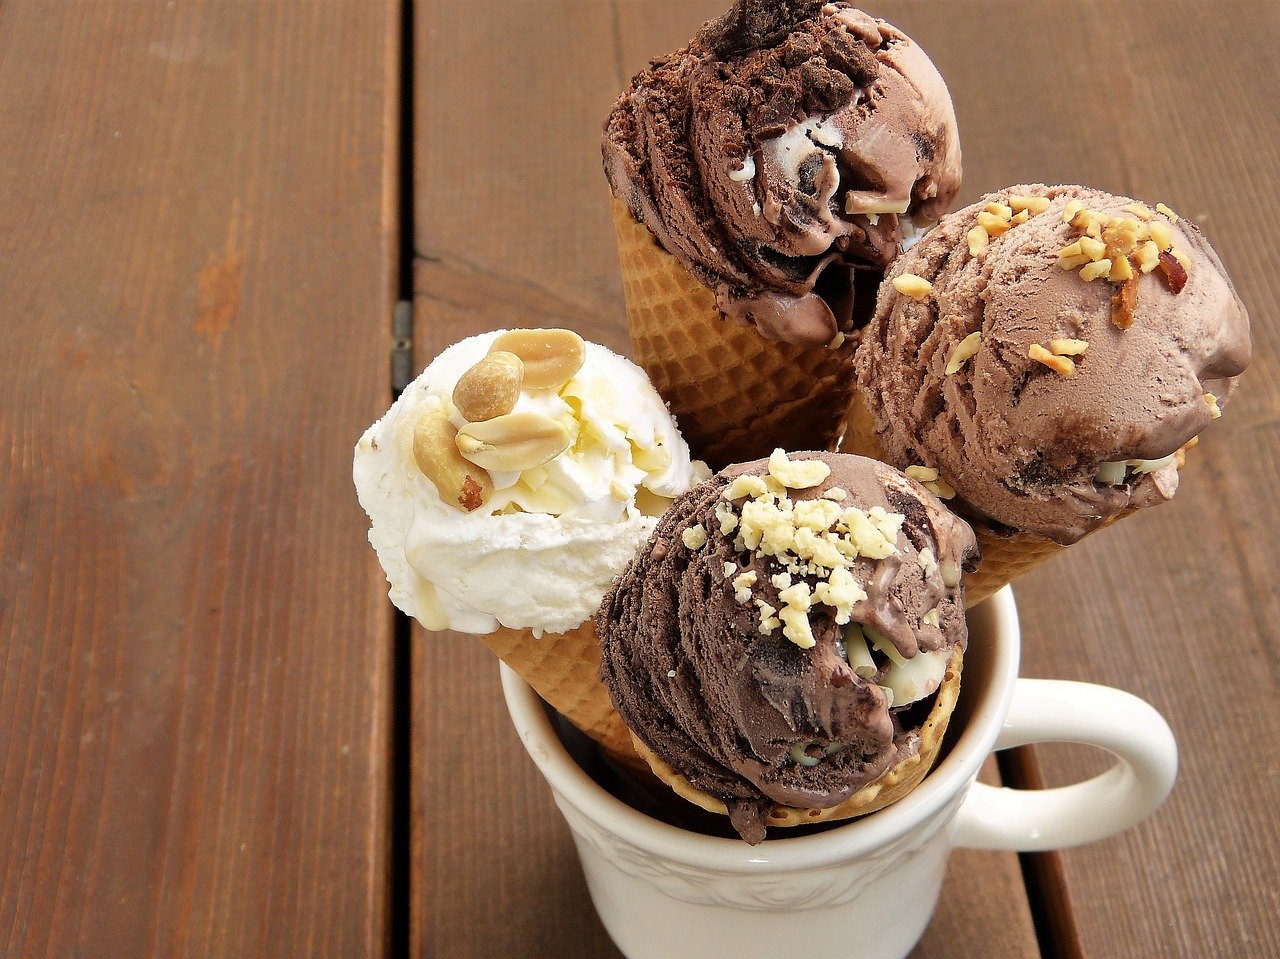 сладолед